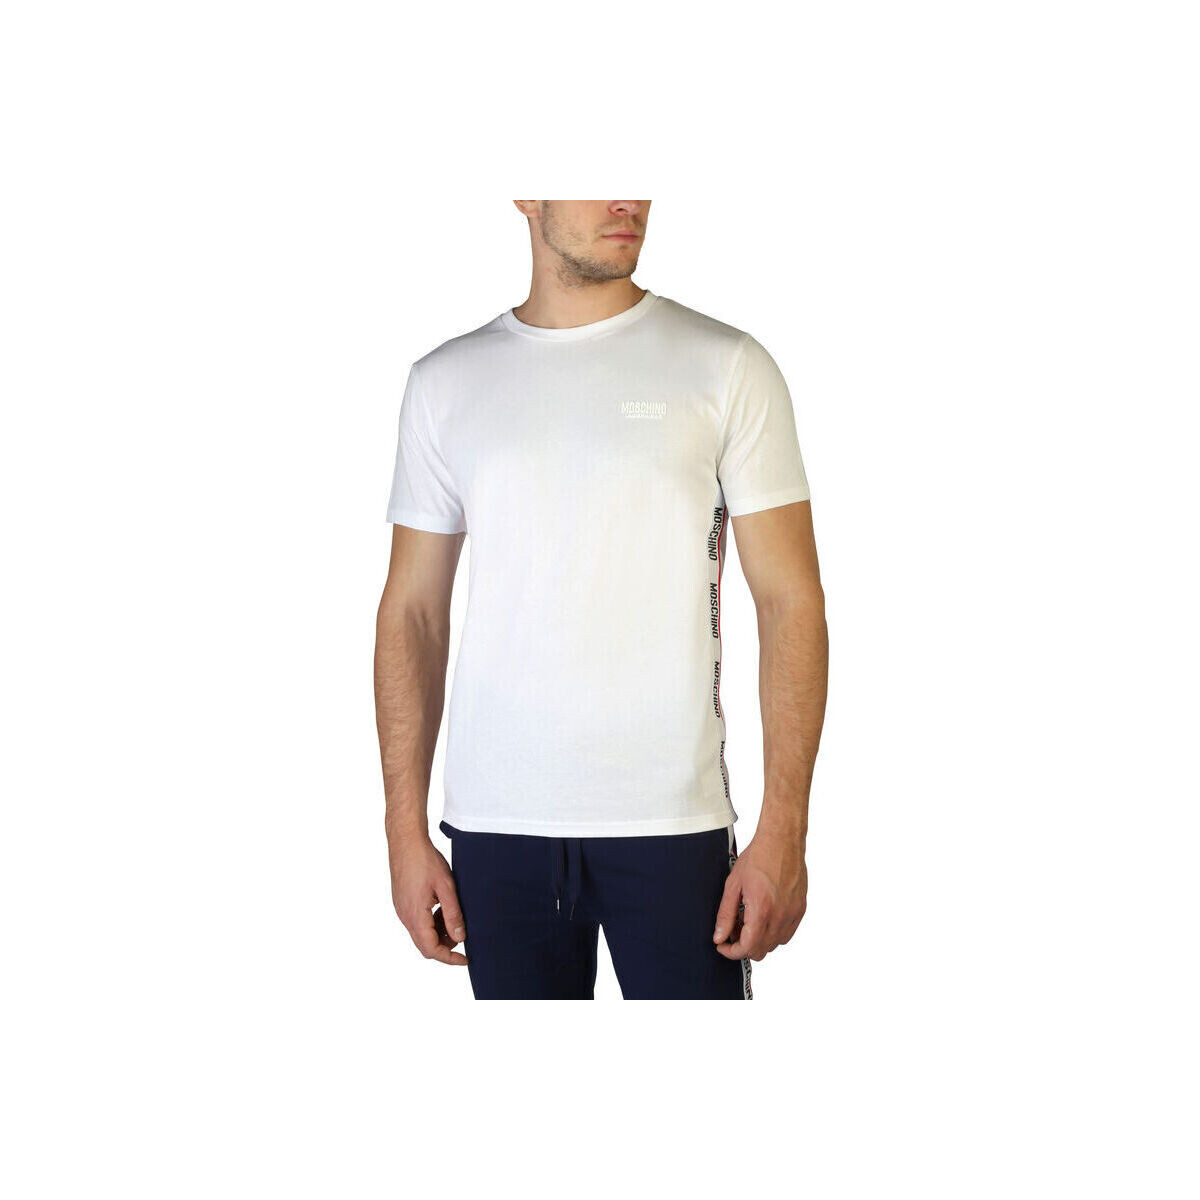 tekstylia Męskie T-shirty z krótkim rękawem Moschino - 1903-8101 Biały